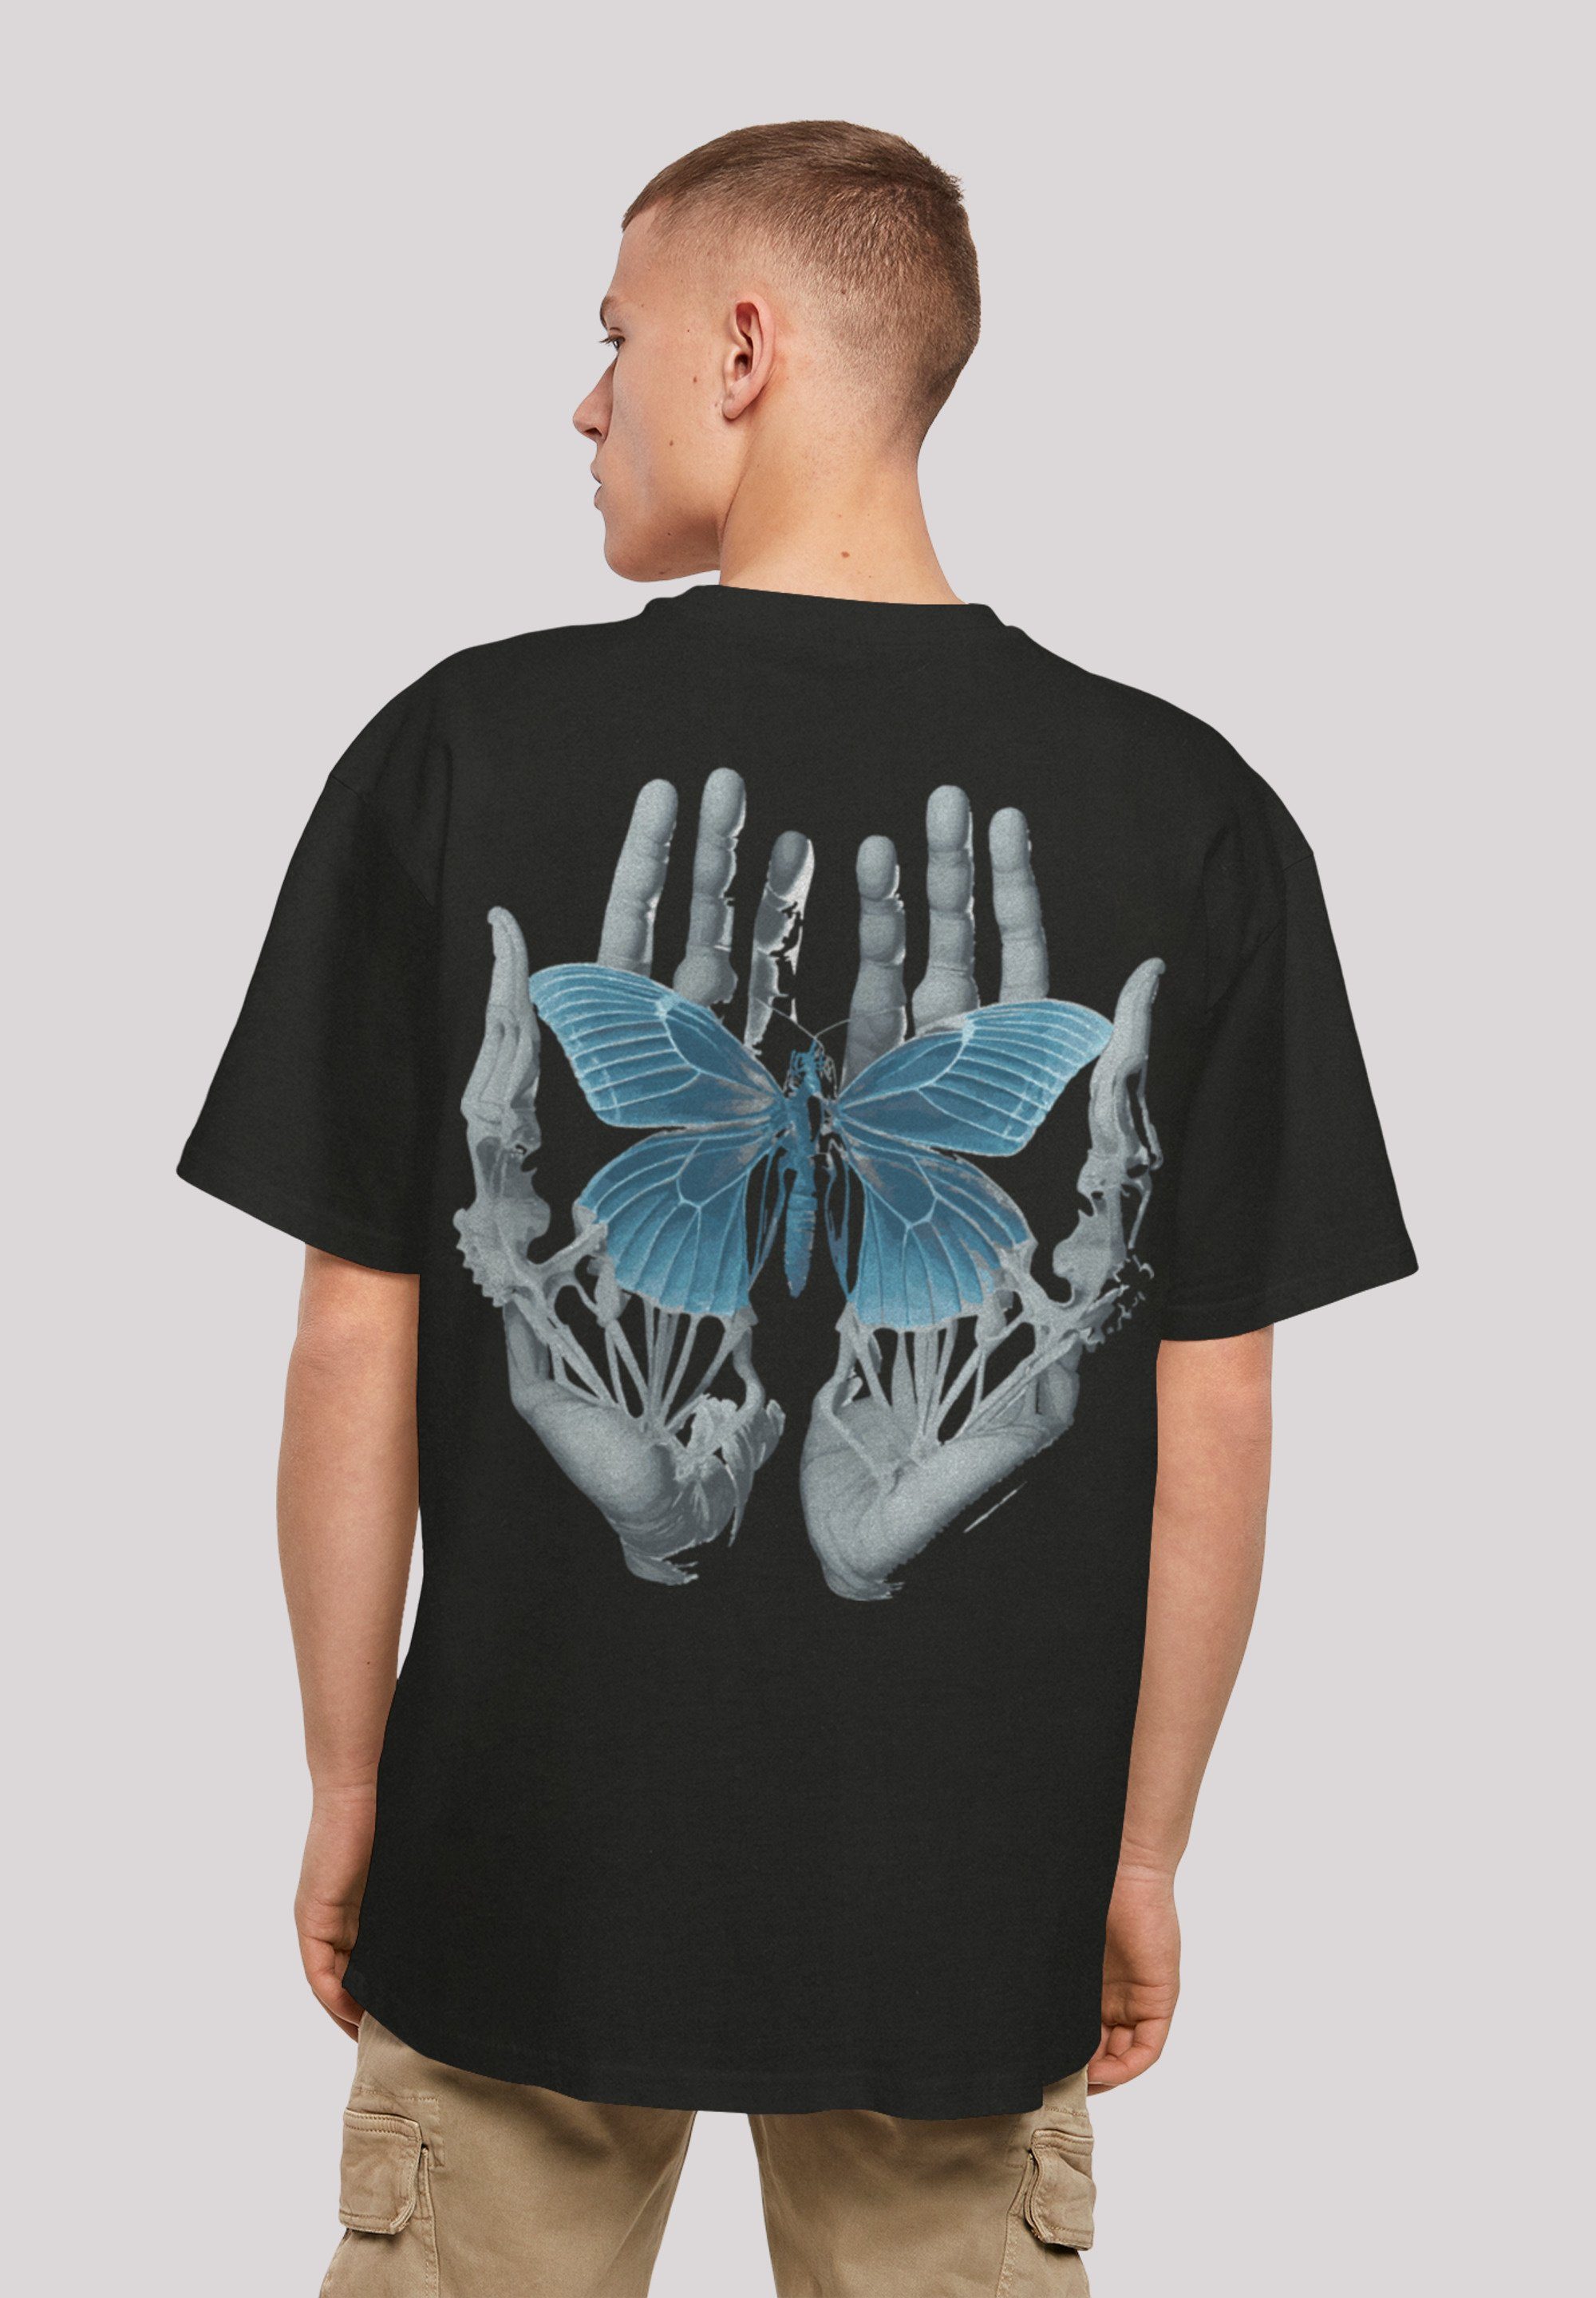 F4NT4STIC T-Shirt Skelett Hände Schmetterling Print schwarz